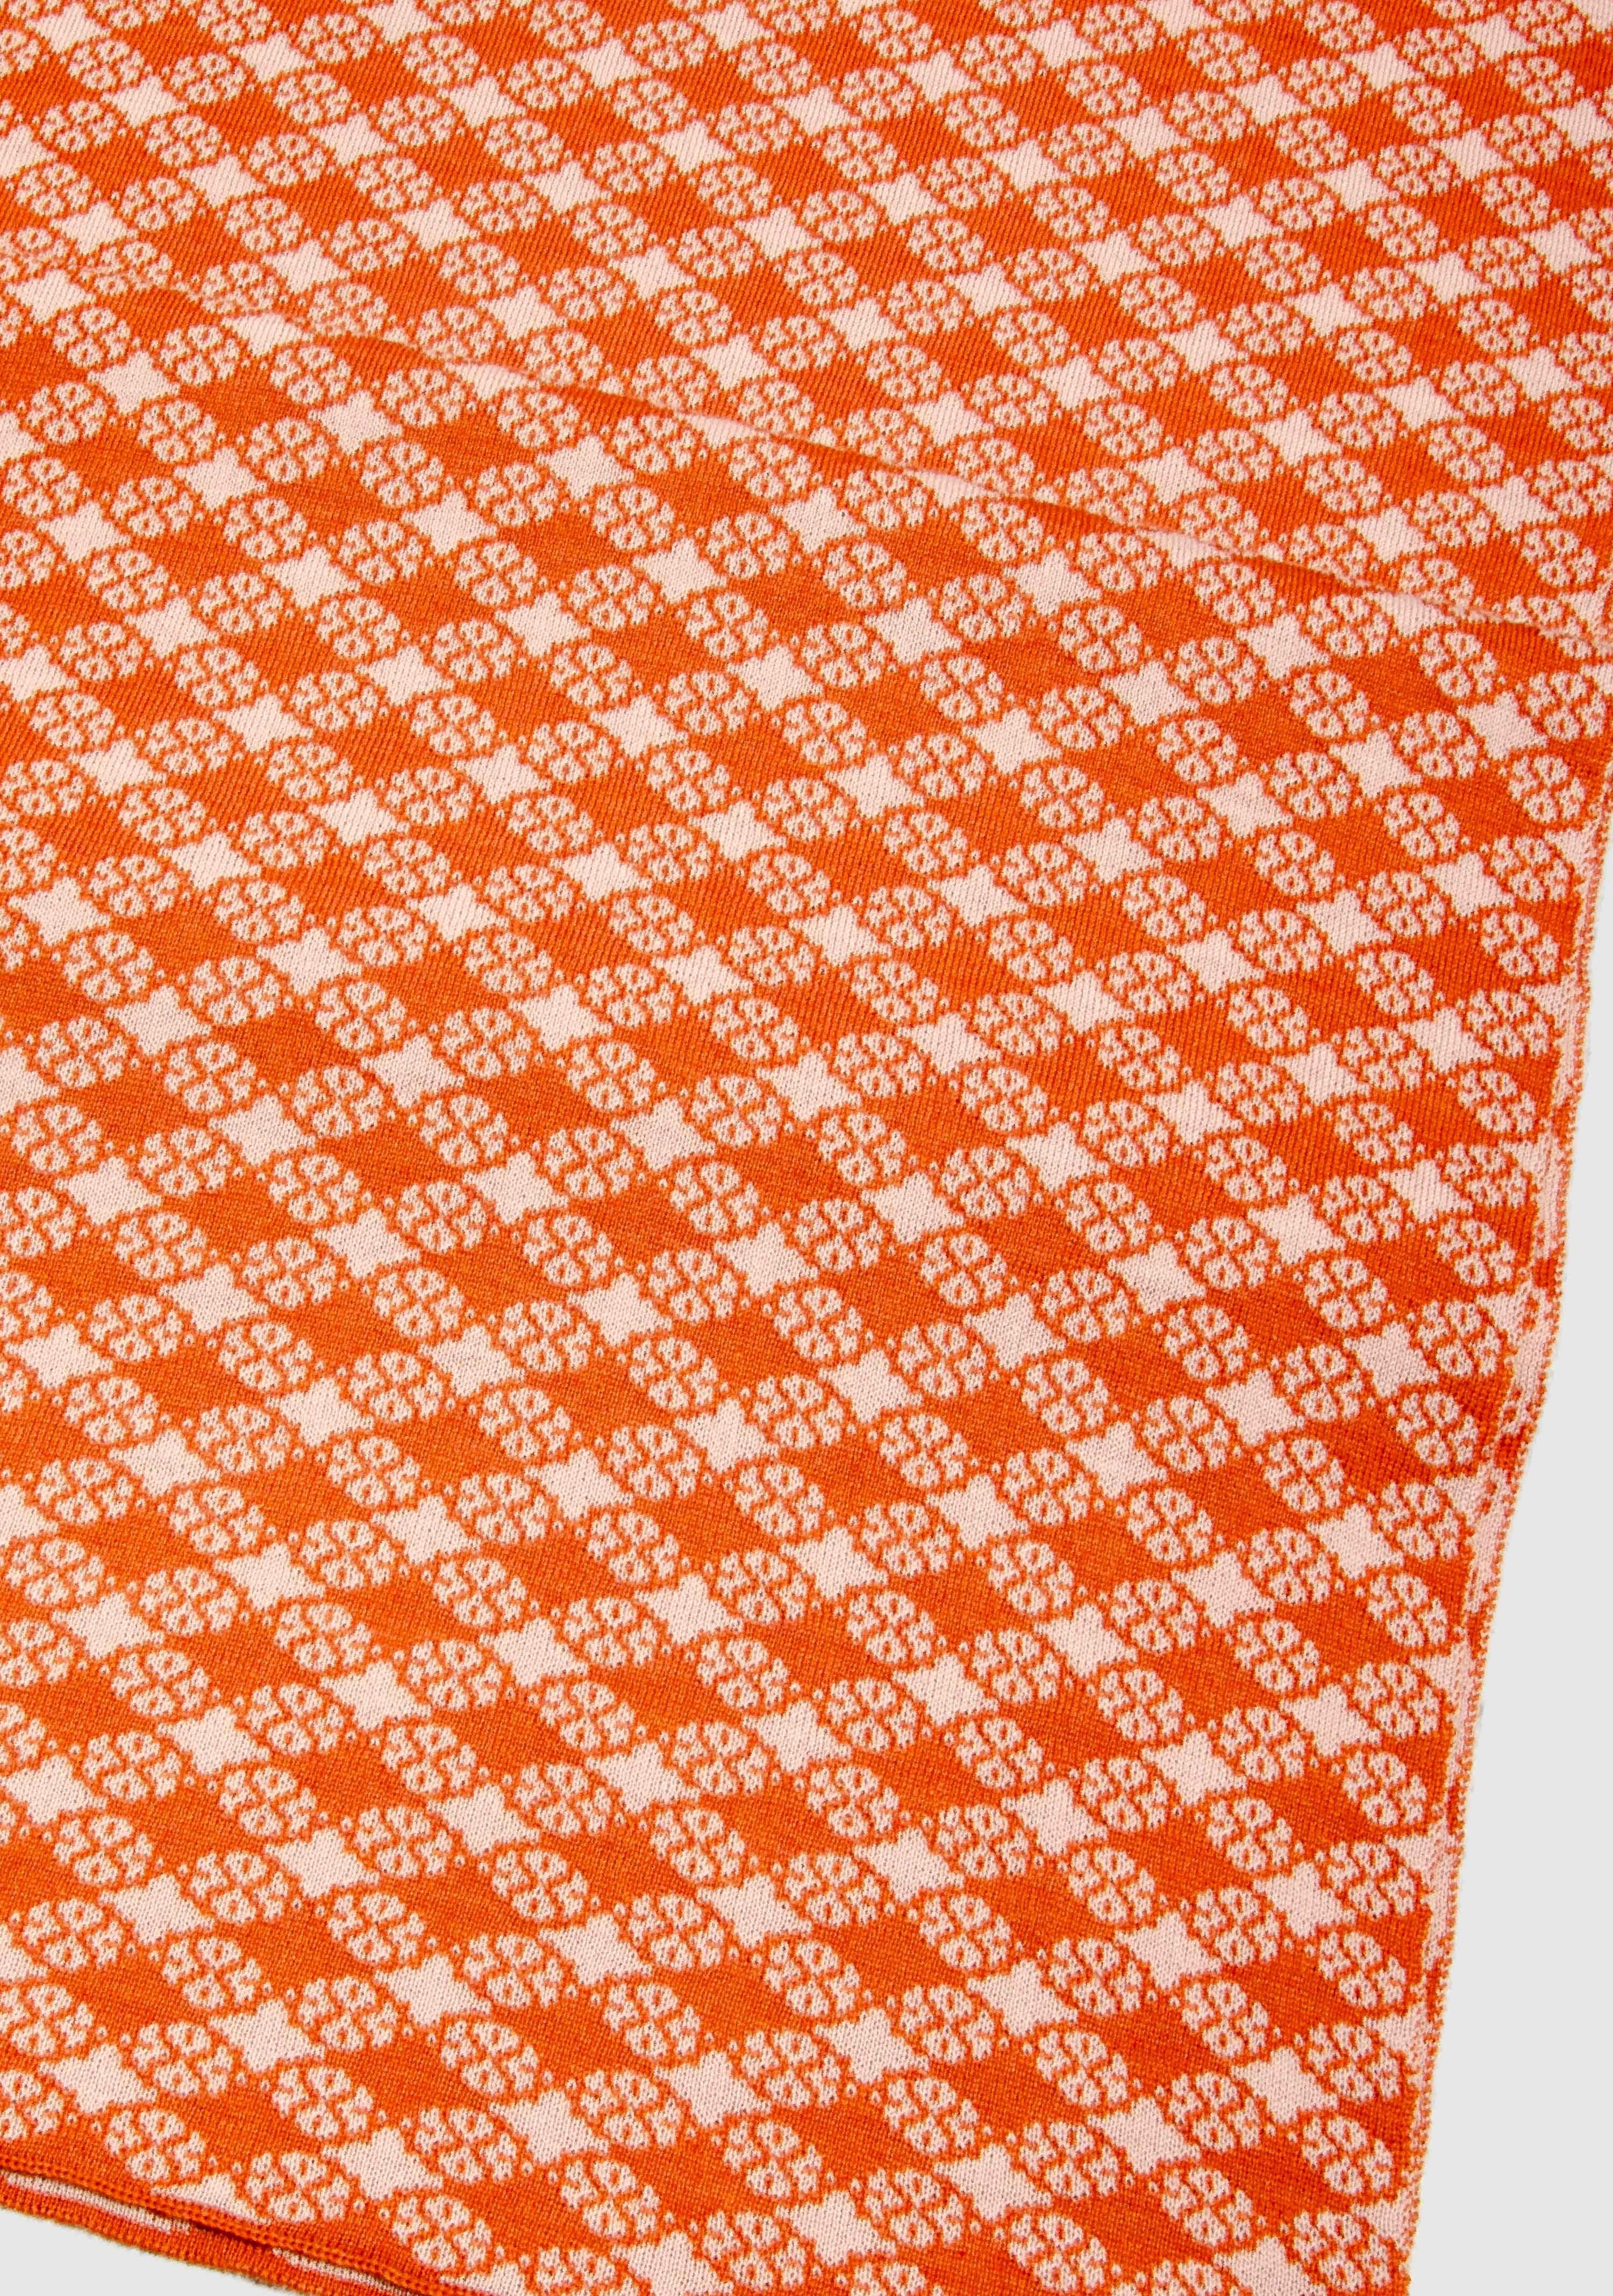 LANARTO slow fashion Wollschal Schal Blütenkaro in schönen Farben 100% Merino extrasoft orange_rosa | Wollschals